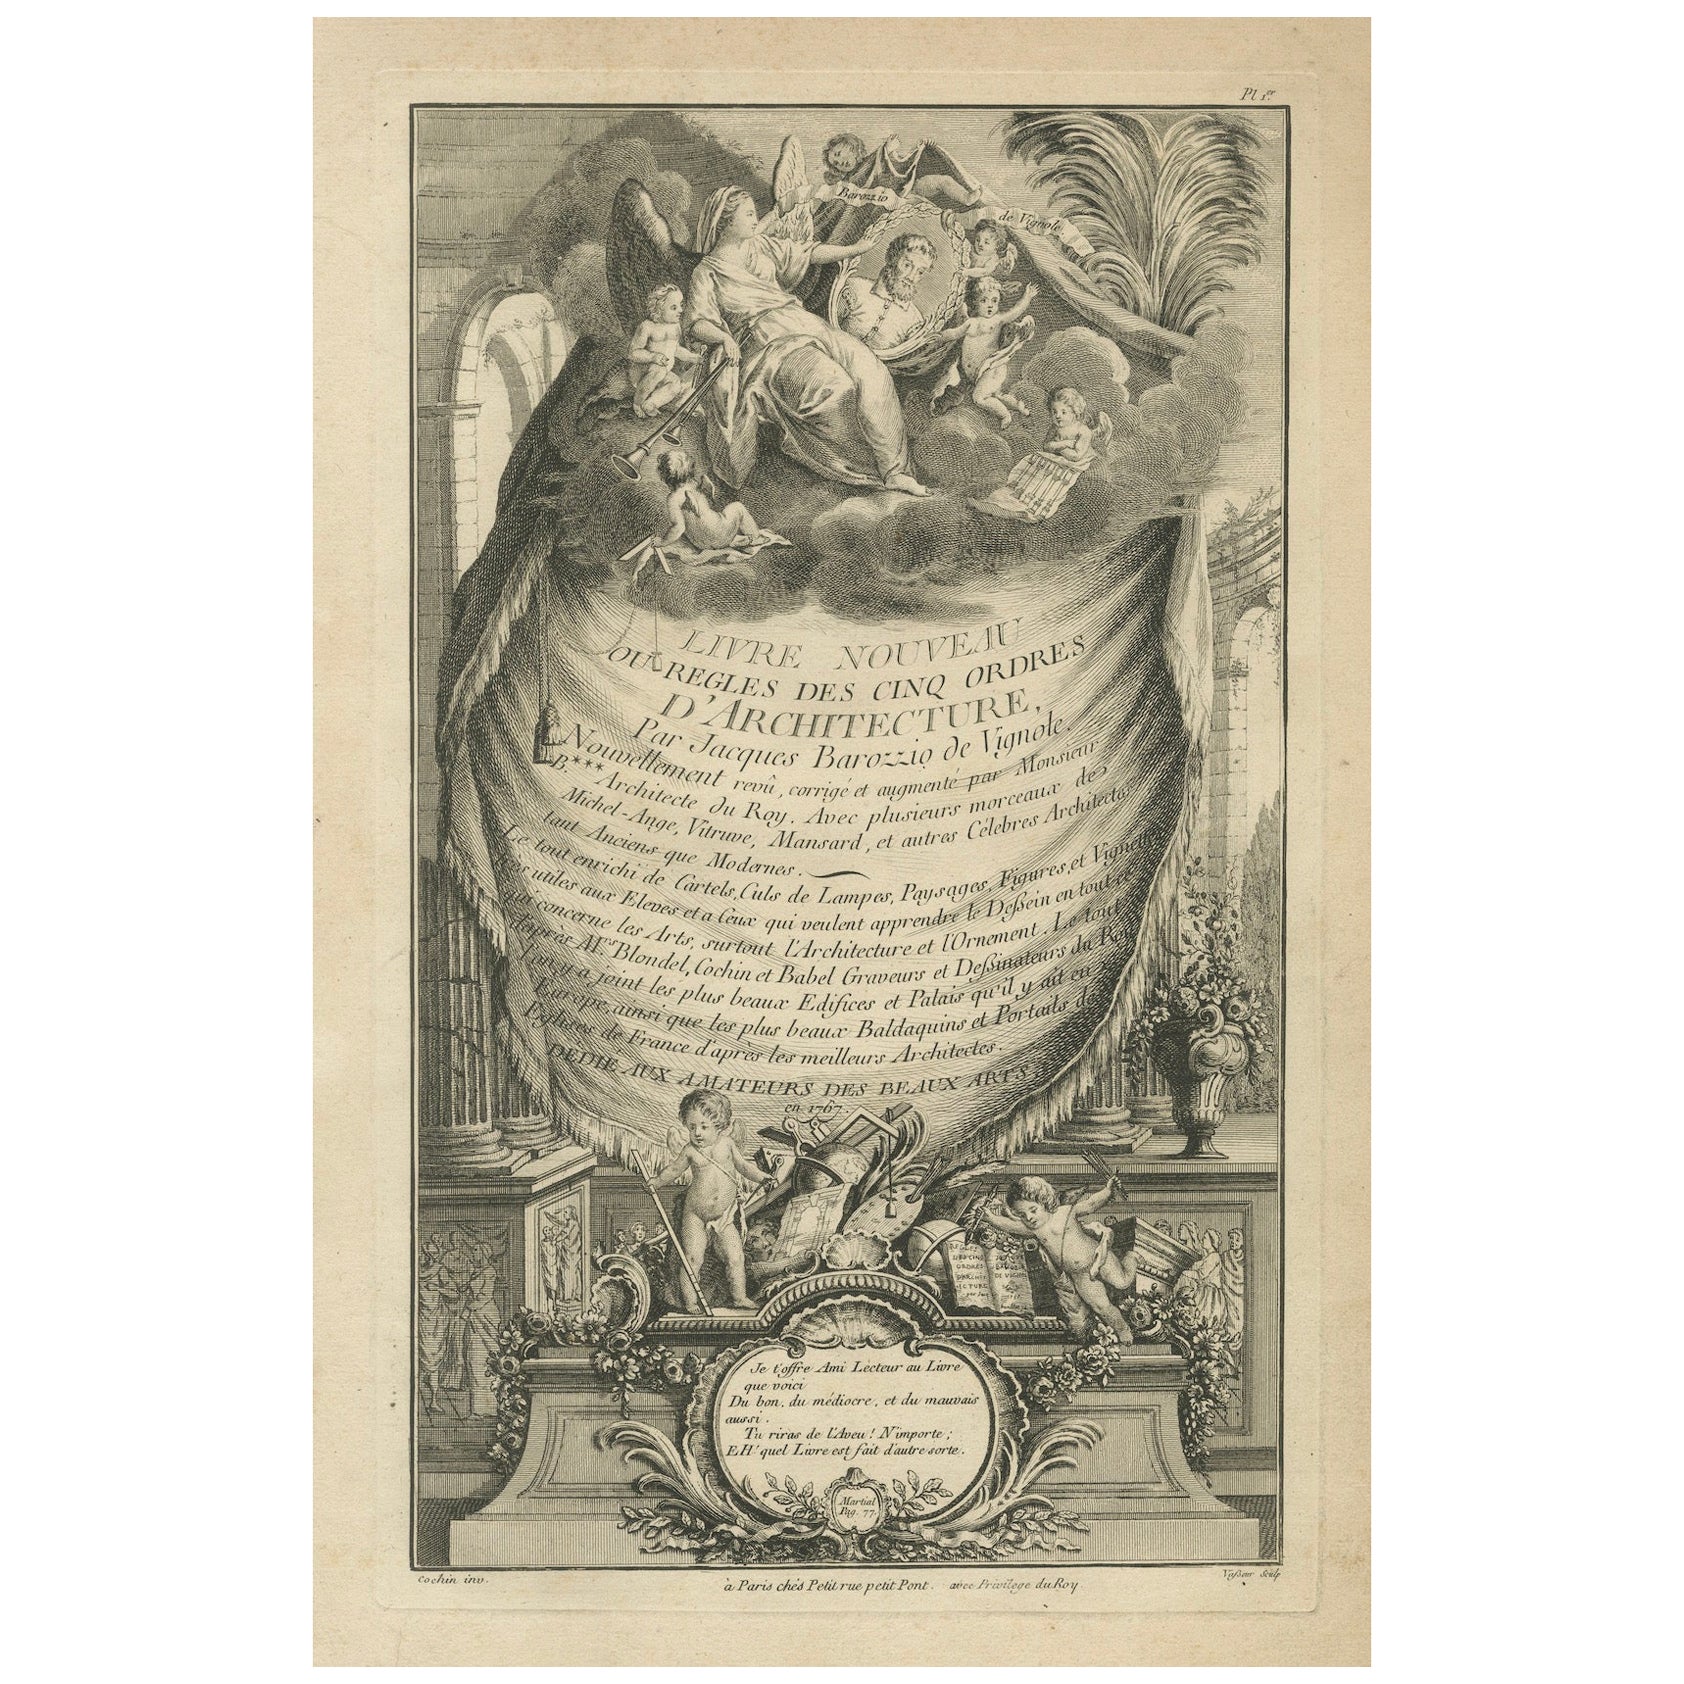 Orders architecturaux de la Renaissance de Vignola, 1767